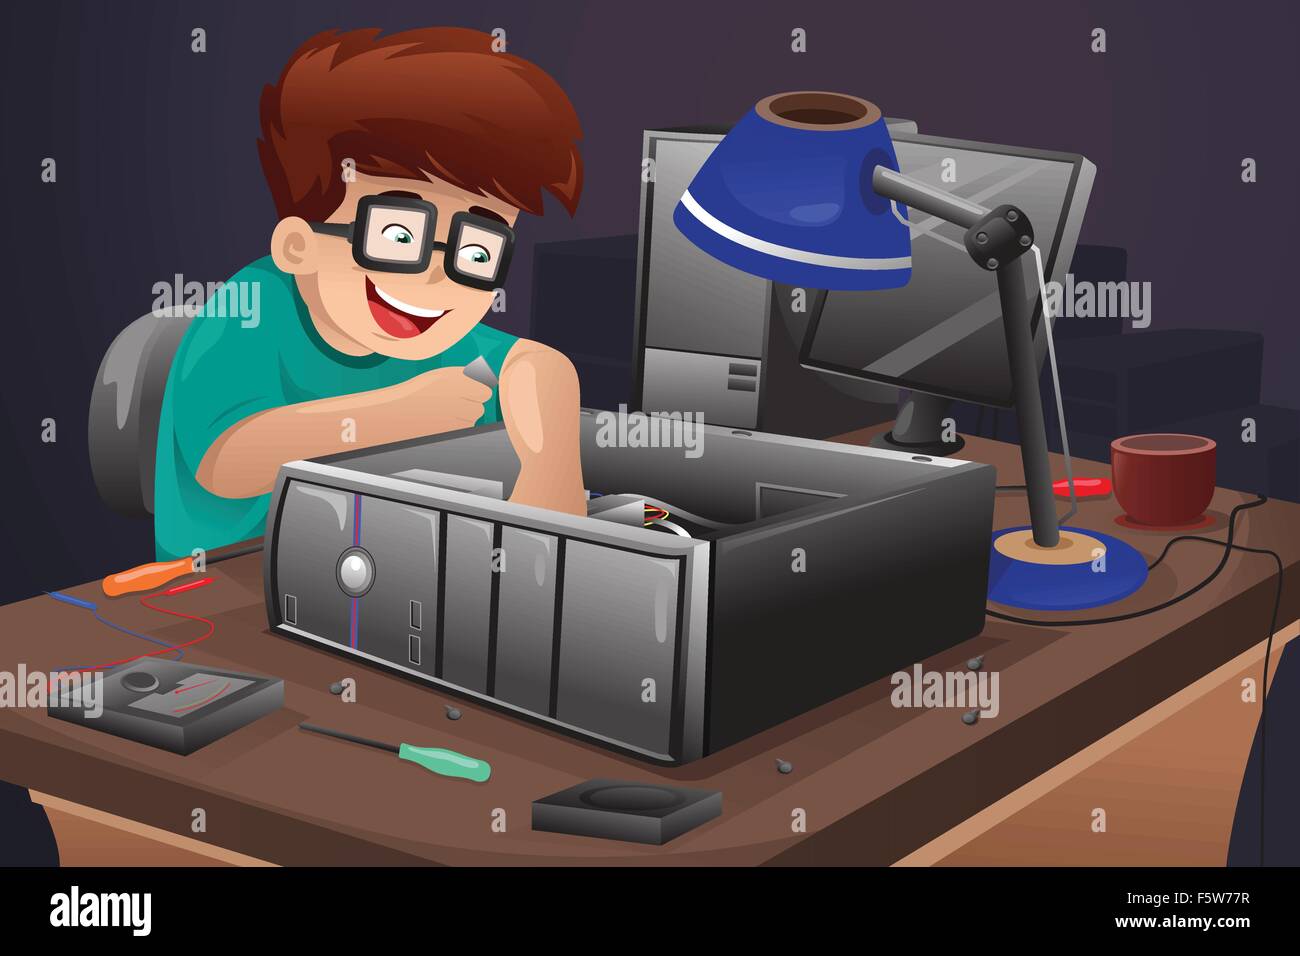 Un vecteur illustration de geek la réparation d'un ordinateur Illustration de Vecteur